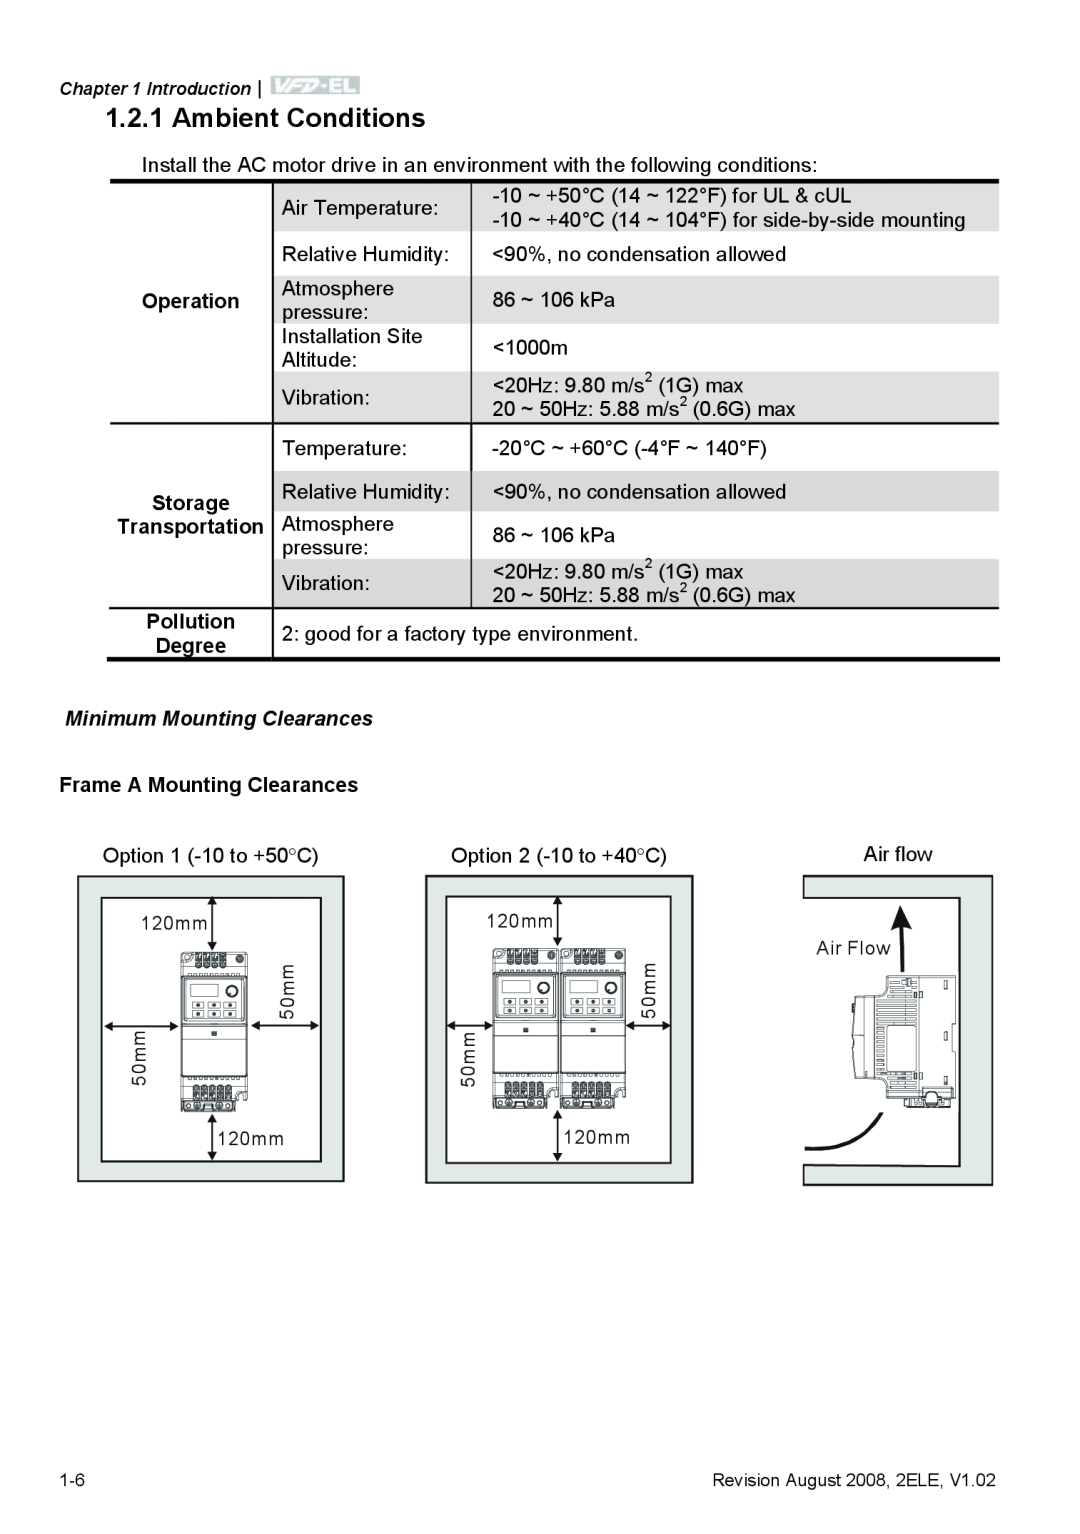 Delta Electronics VFD-EL manual Ambient Conditions, Minimum Mounting Clearances 